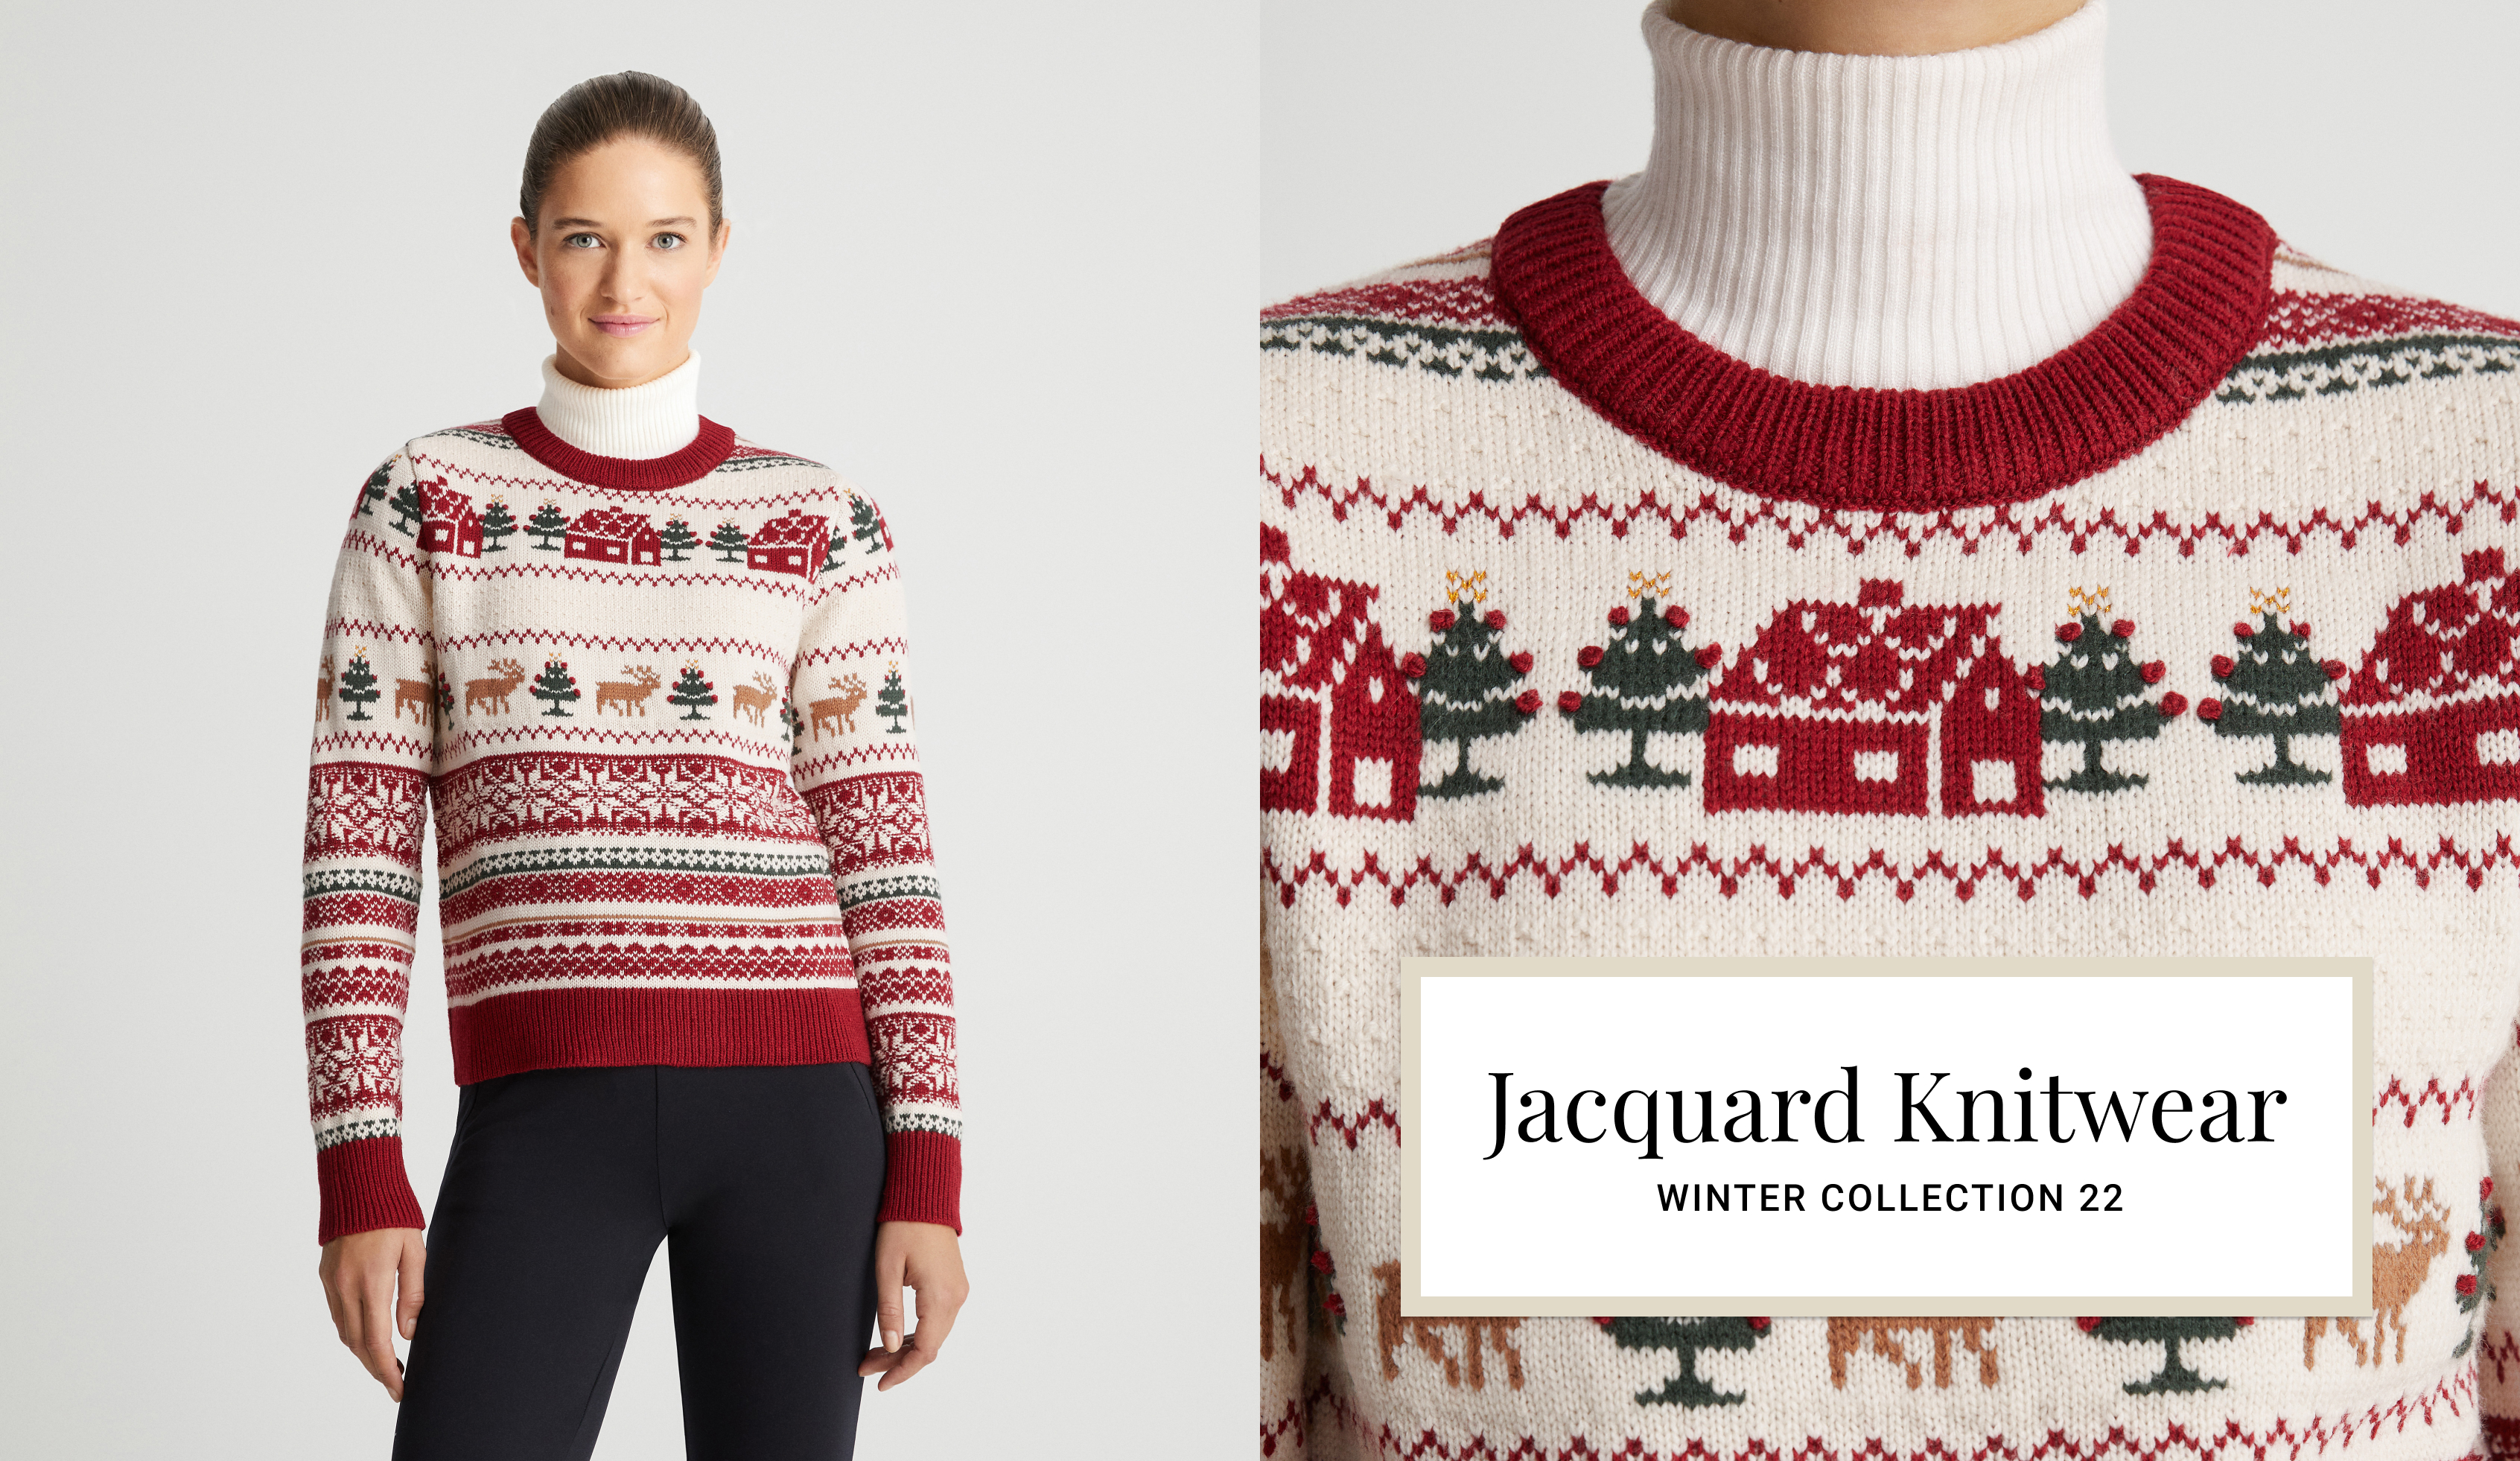 Sweater i jacquardstrik med julemotiv